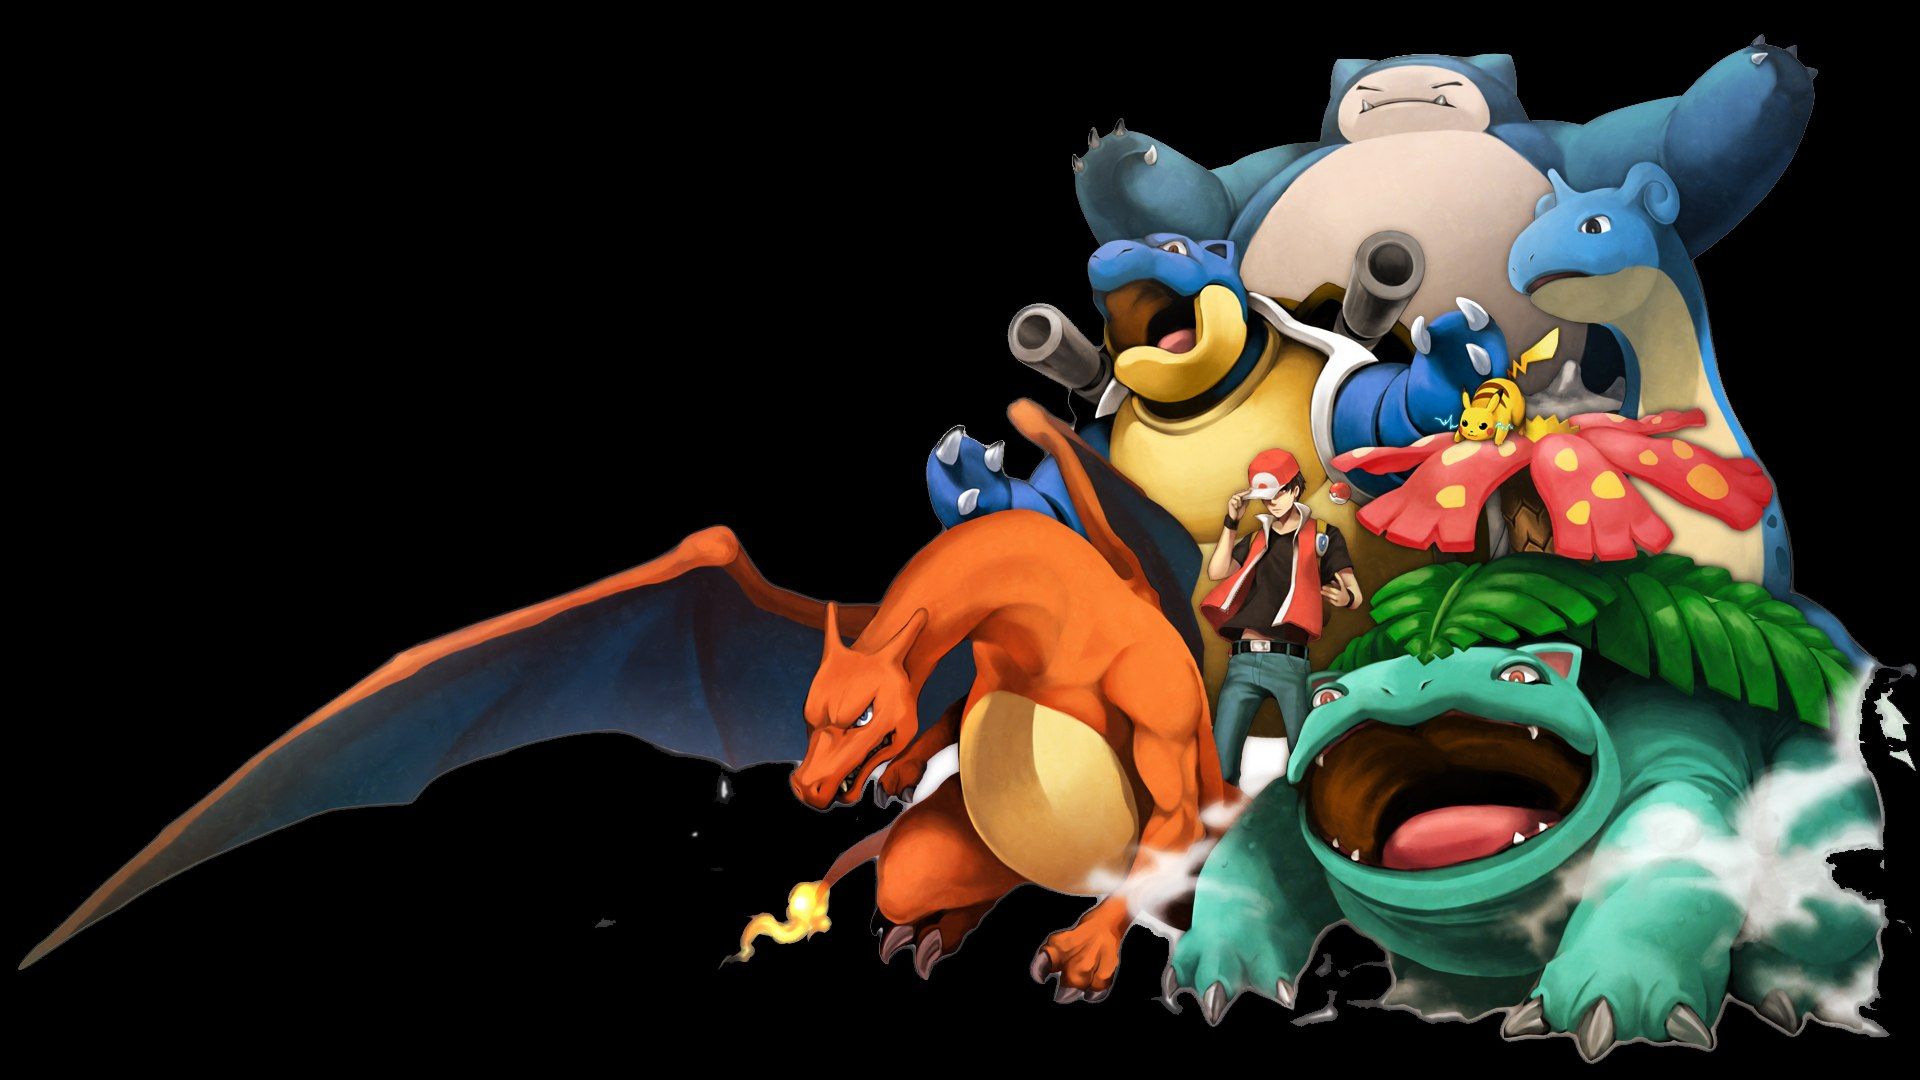 Pokémon Cartoon Wallpapers - Wallpaper Cave - Khám phá thế giới đầy màu sắc và phiêu lưu với những hình nền Pokémon hoạt hình đầy dễ thương và vui nhộn. Trang trí cho màn hình điện thoại của bạn một cách độc đáo với những hình ảnh cho tới nay bạn chưa từng thấy.